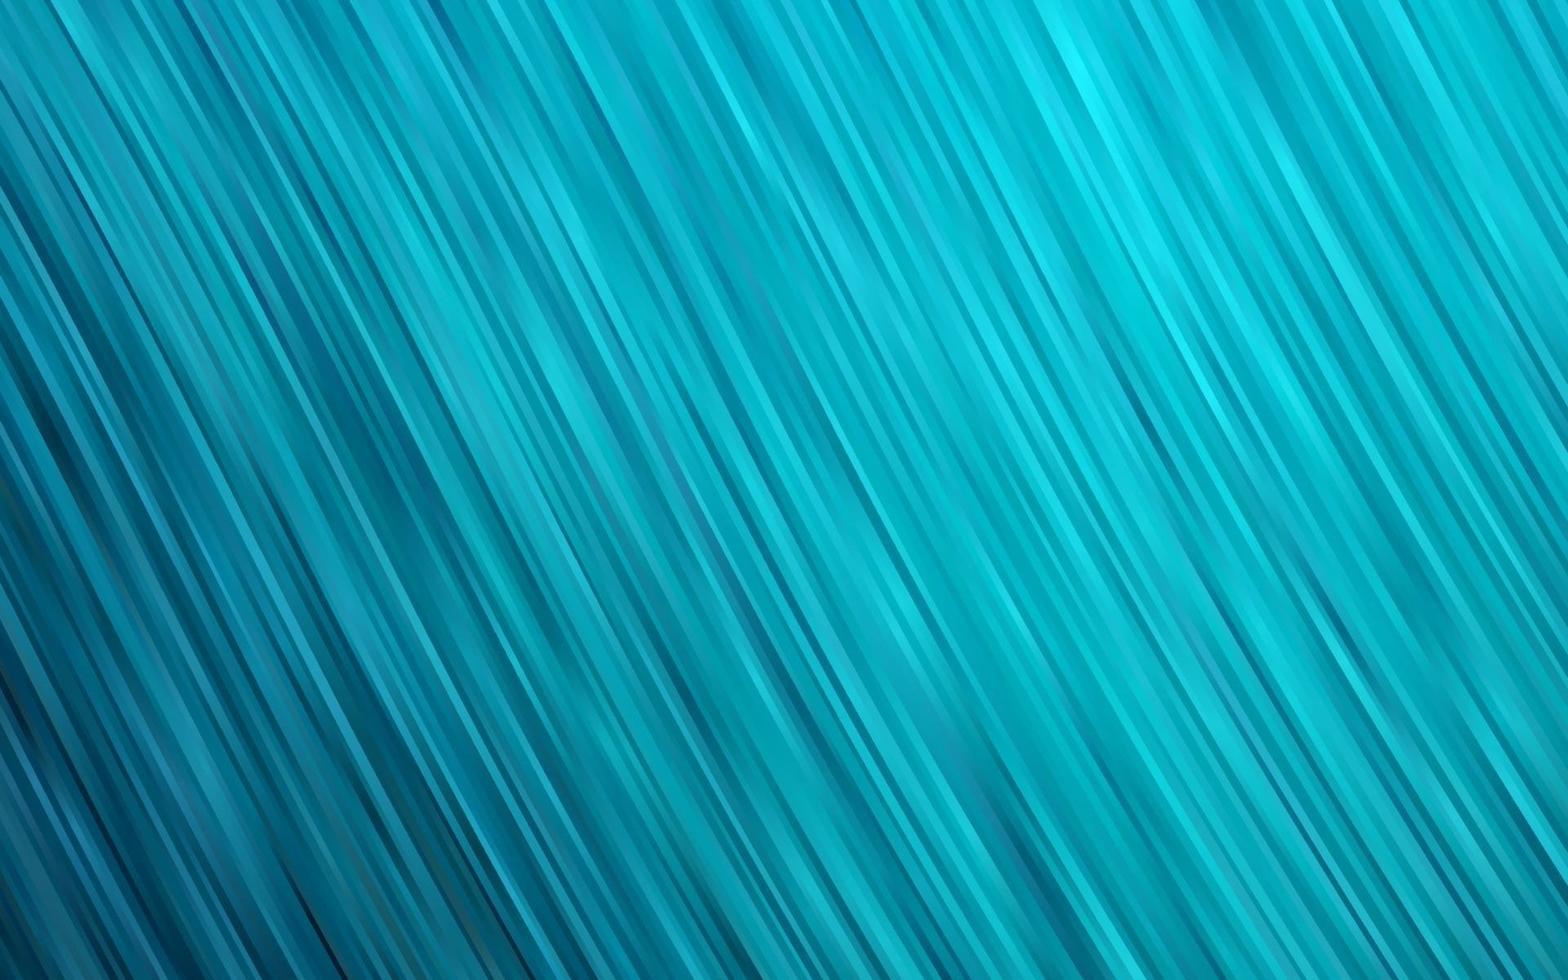 ljusblå vektor bakgrund med bubbla former.